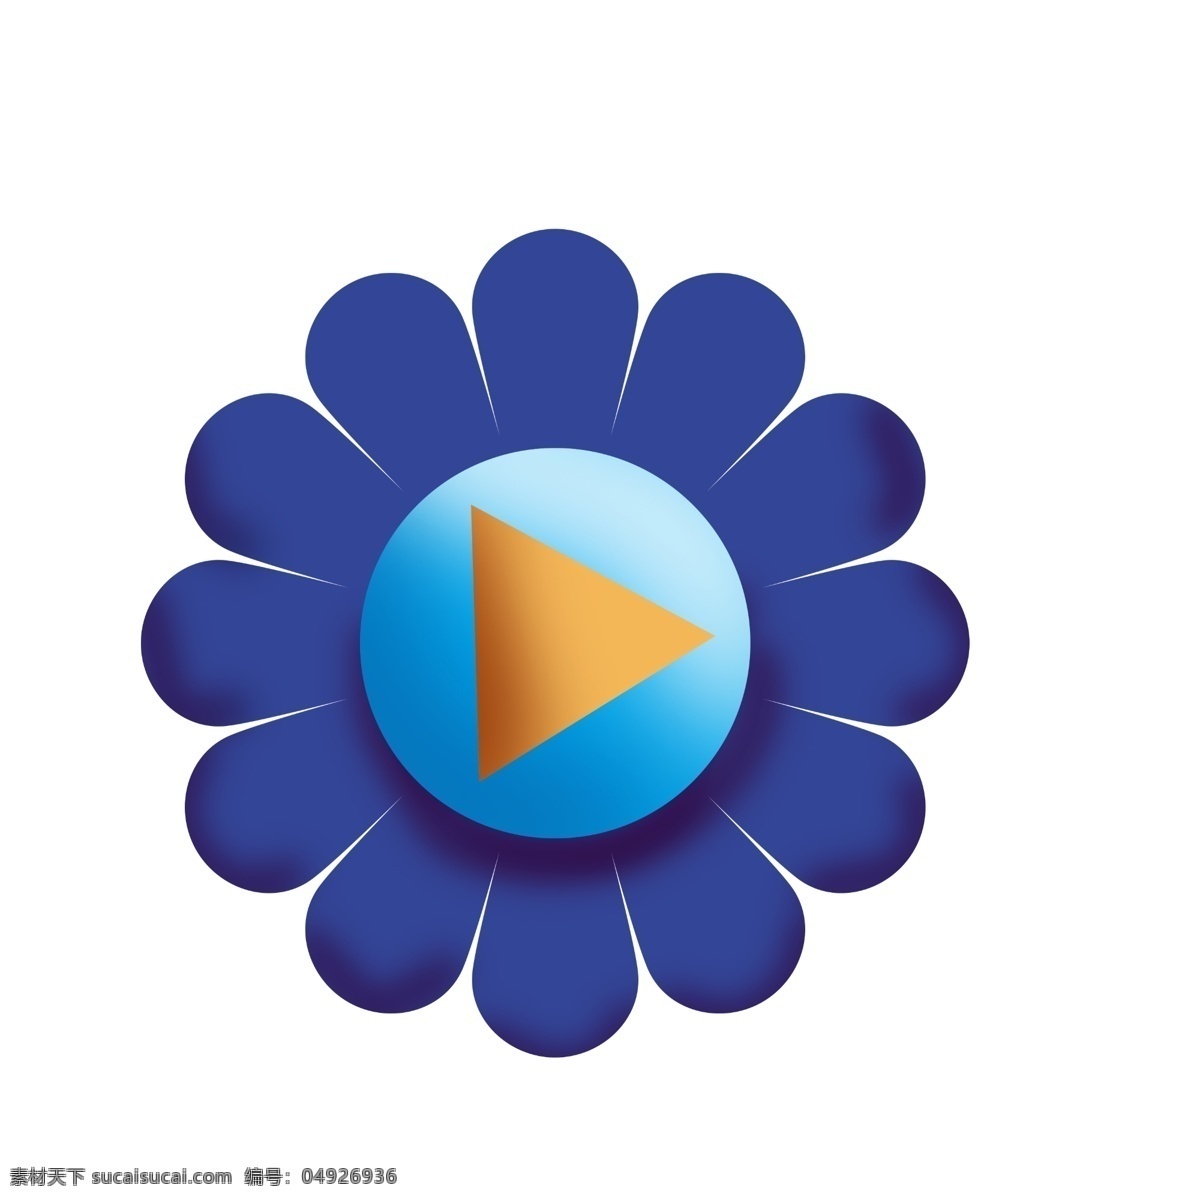 蓝色 花朵 按钮 插画 花朵按钮 开始按钮 蓝色按钮 花朵按钮插画 蓝色花朵插画 漂亮